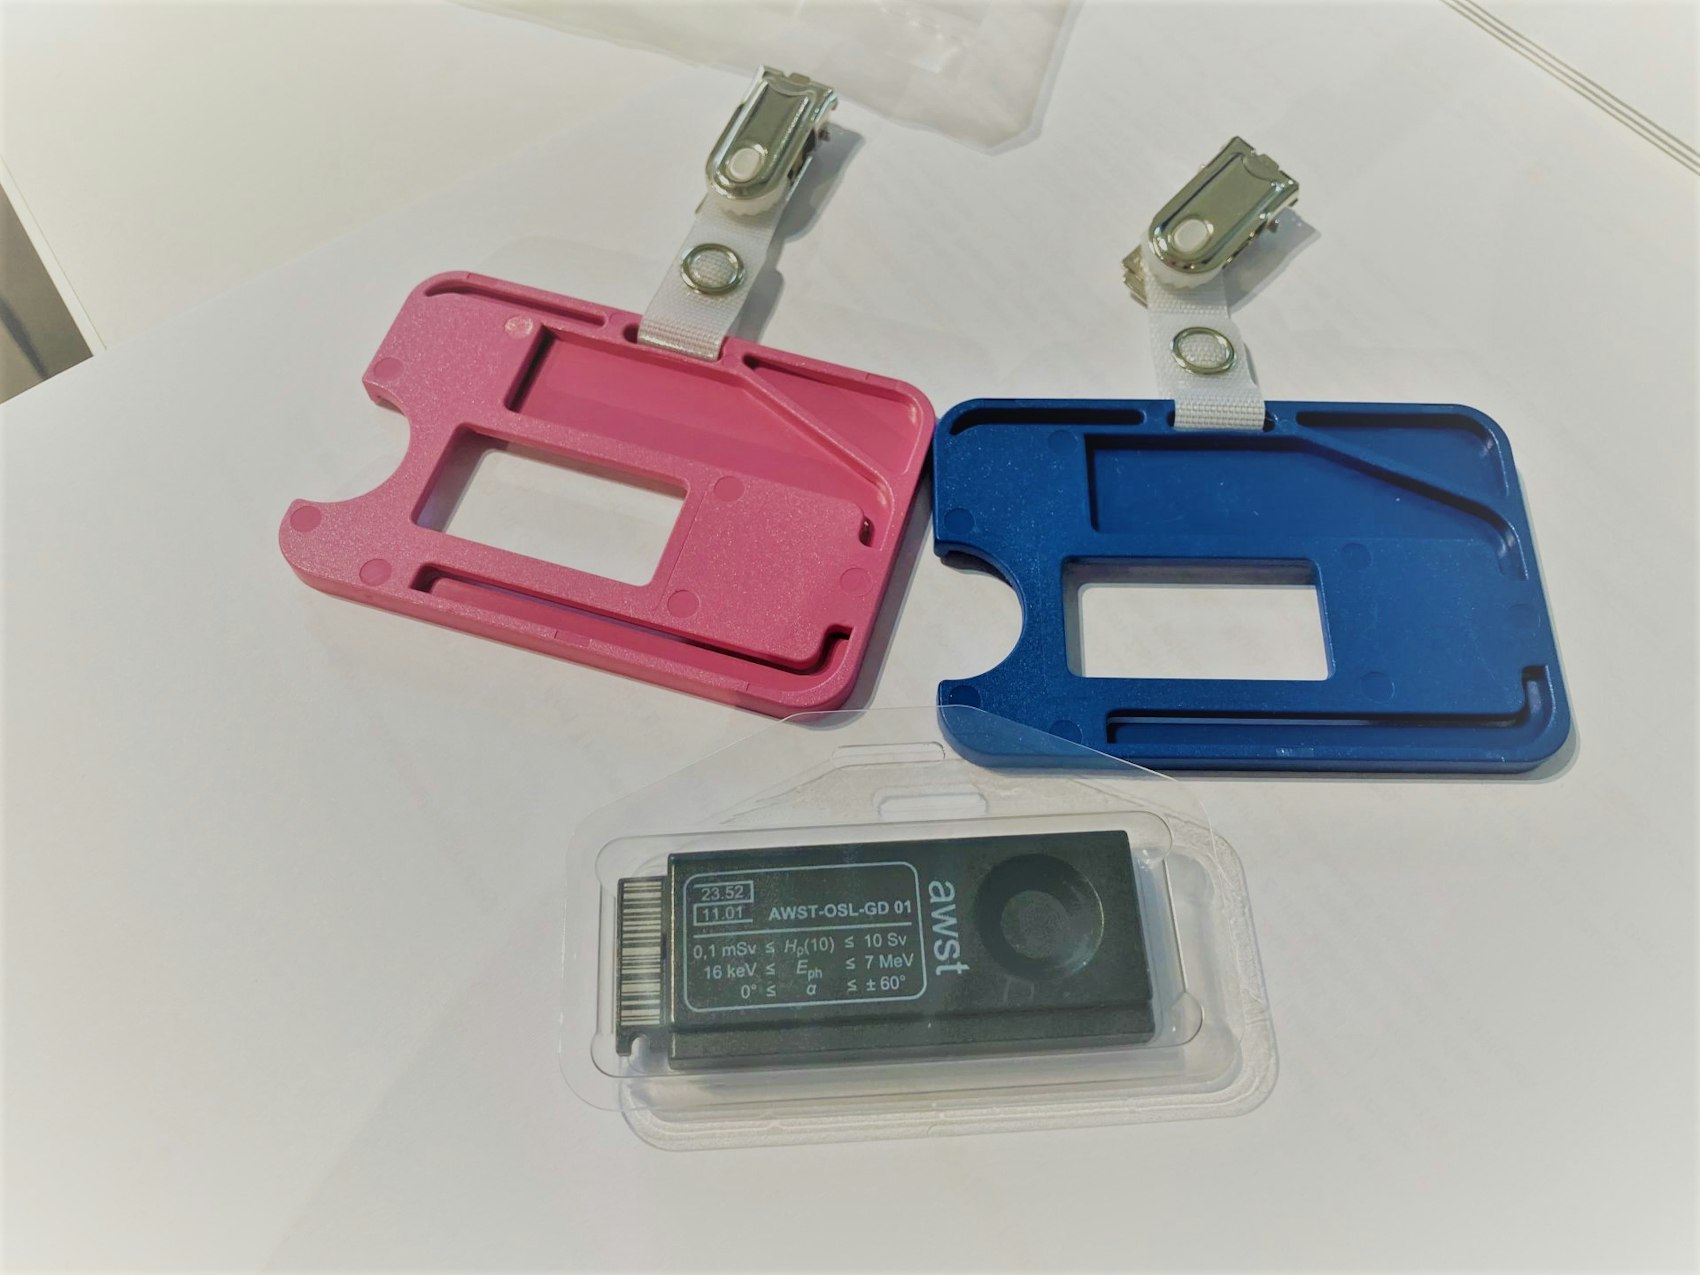 Ein OSL-Dosimeter liegt zusammen mit einem blaen und rosafarbenen Trägerrahmen auf einem Tisch